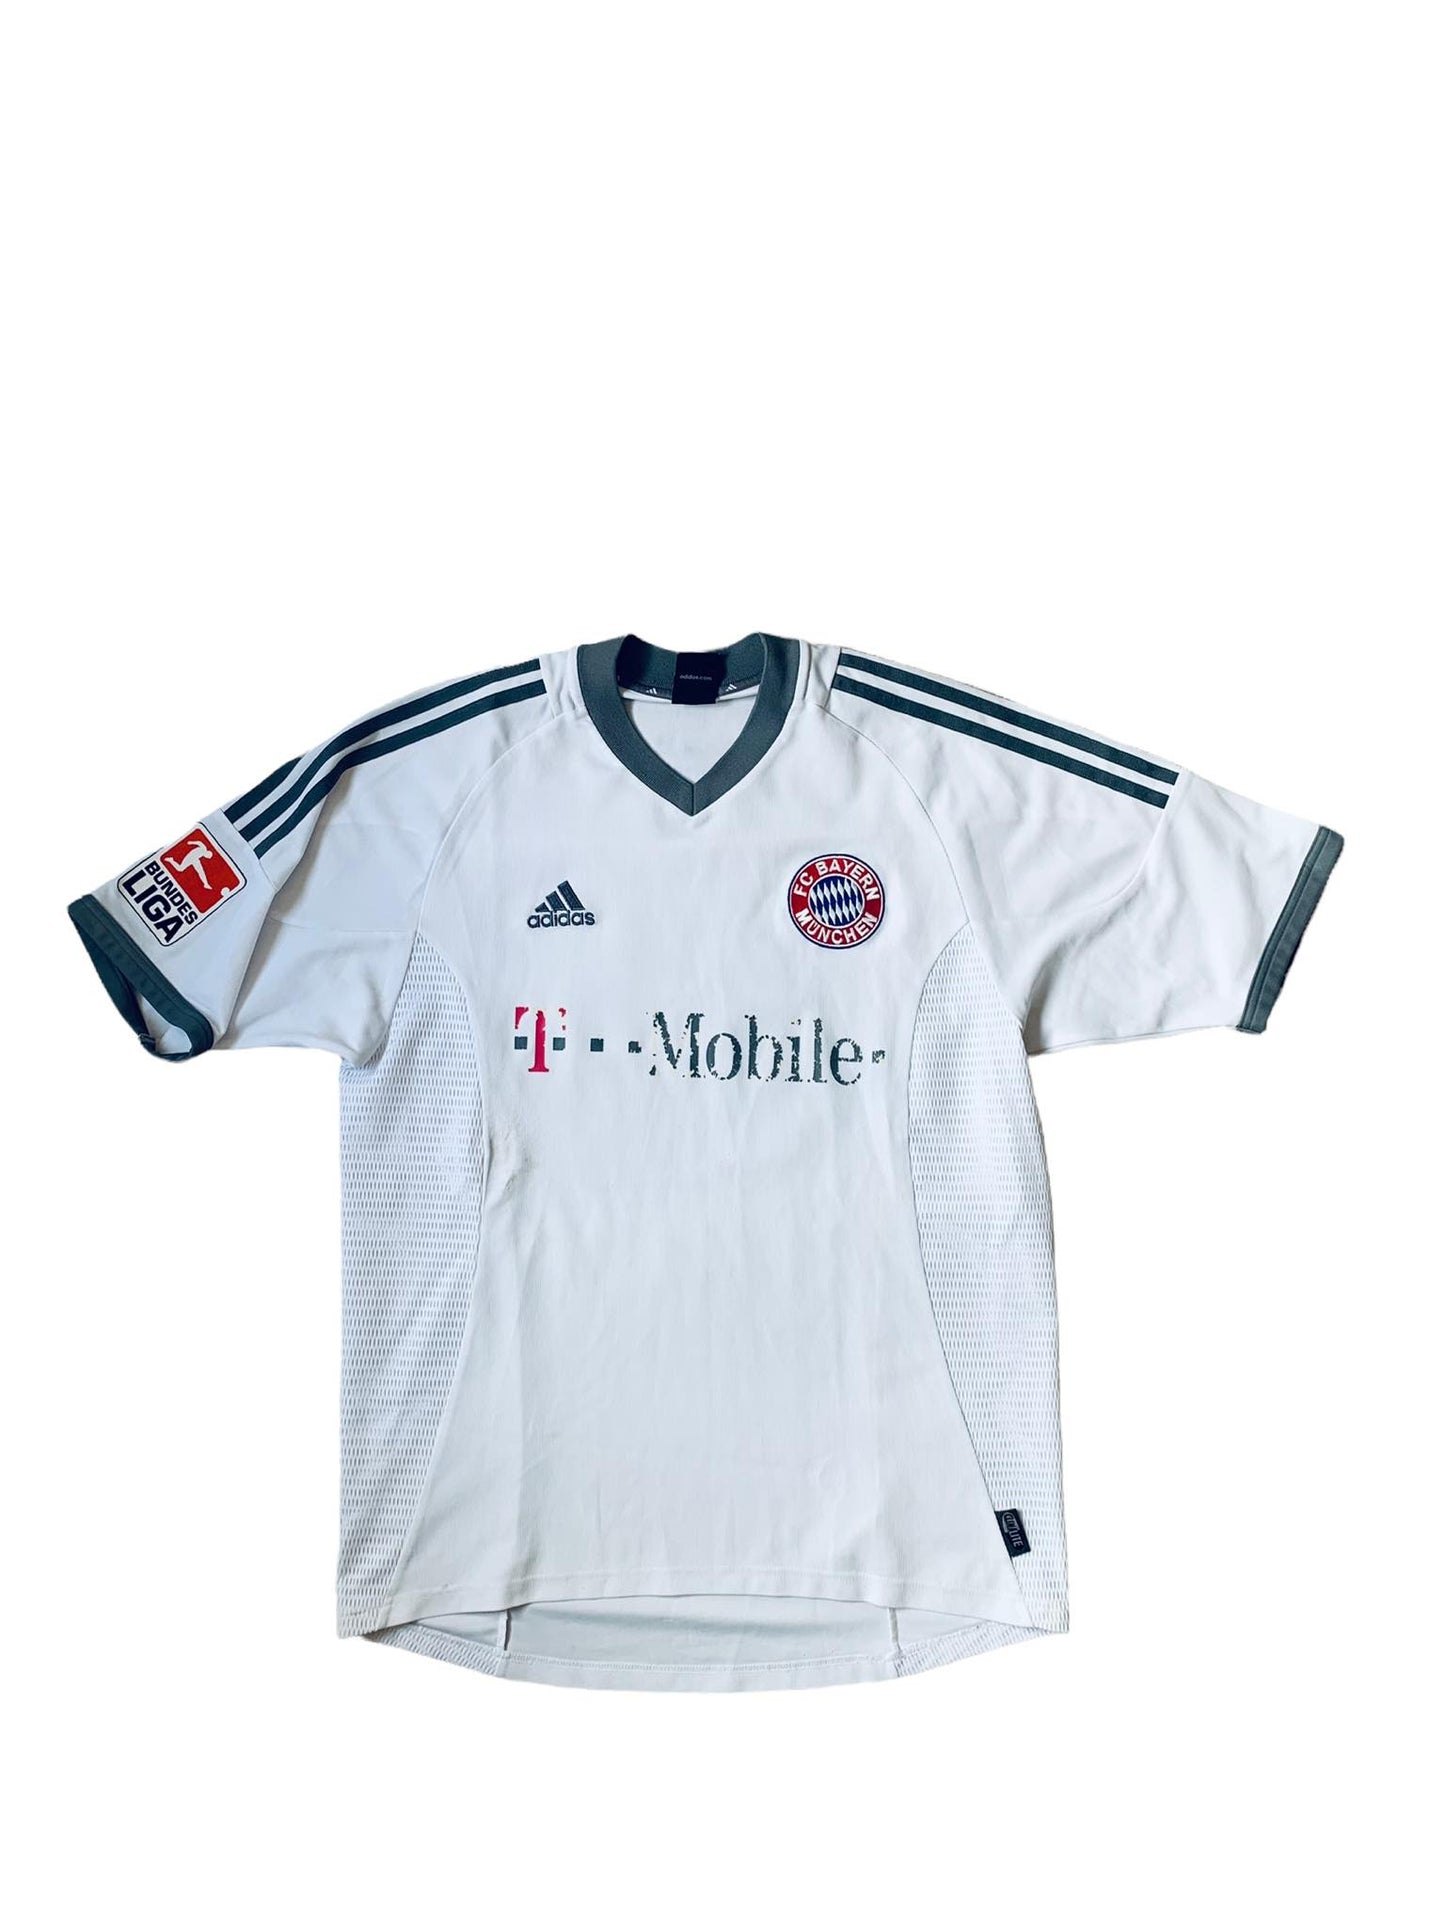 Bayern Munich 2002/04 Away Shirt - Zé Roberto 11 (M)